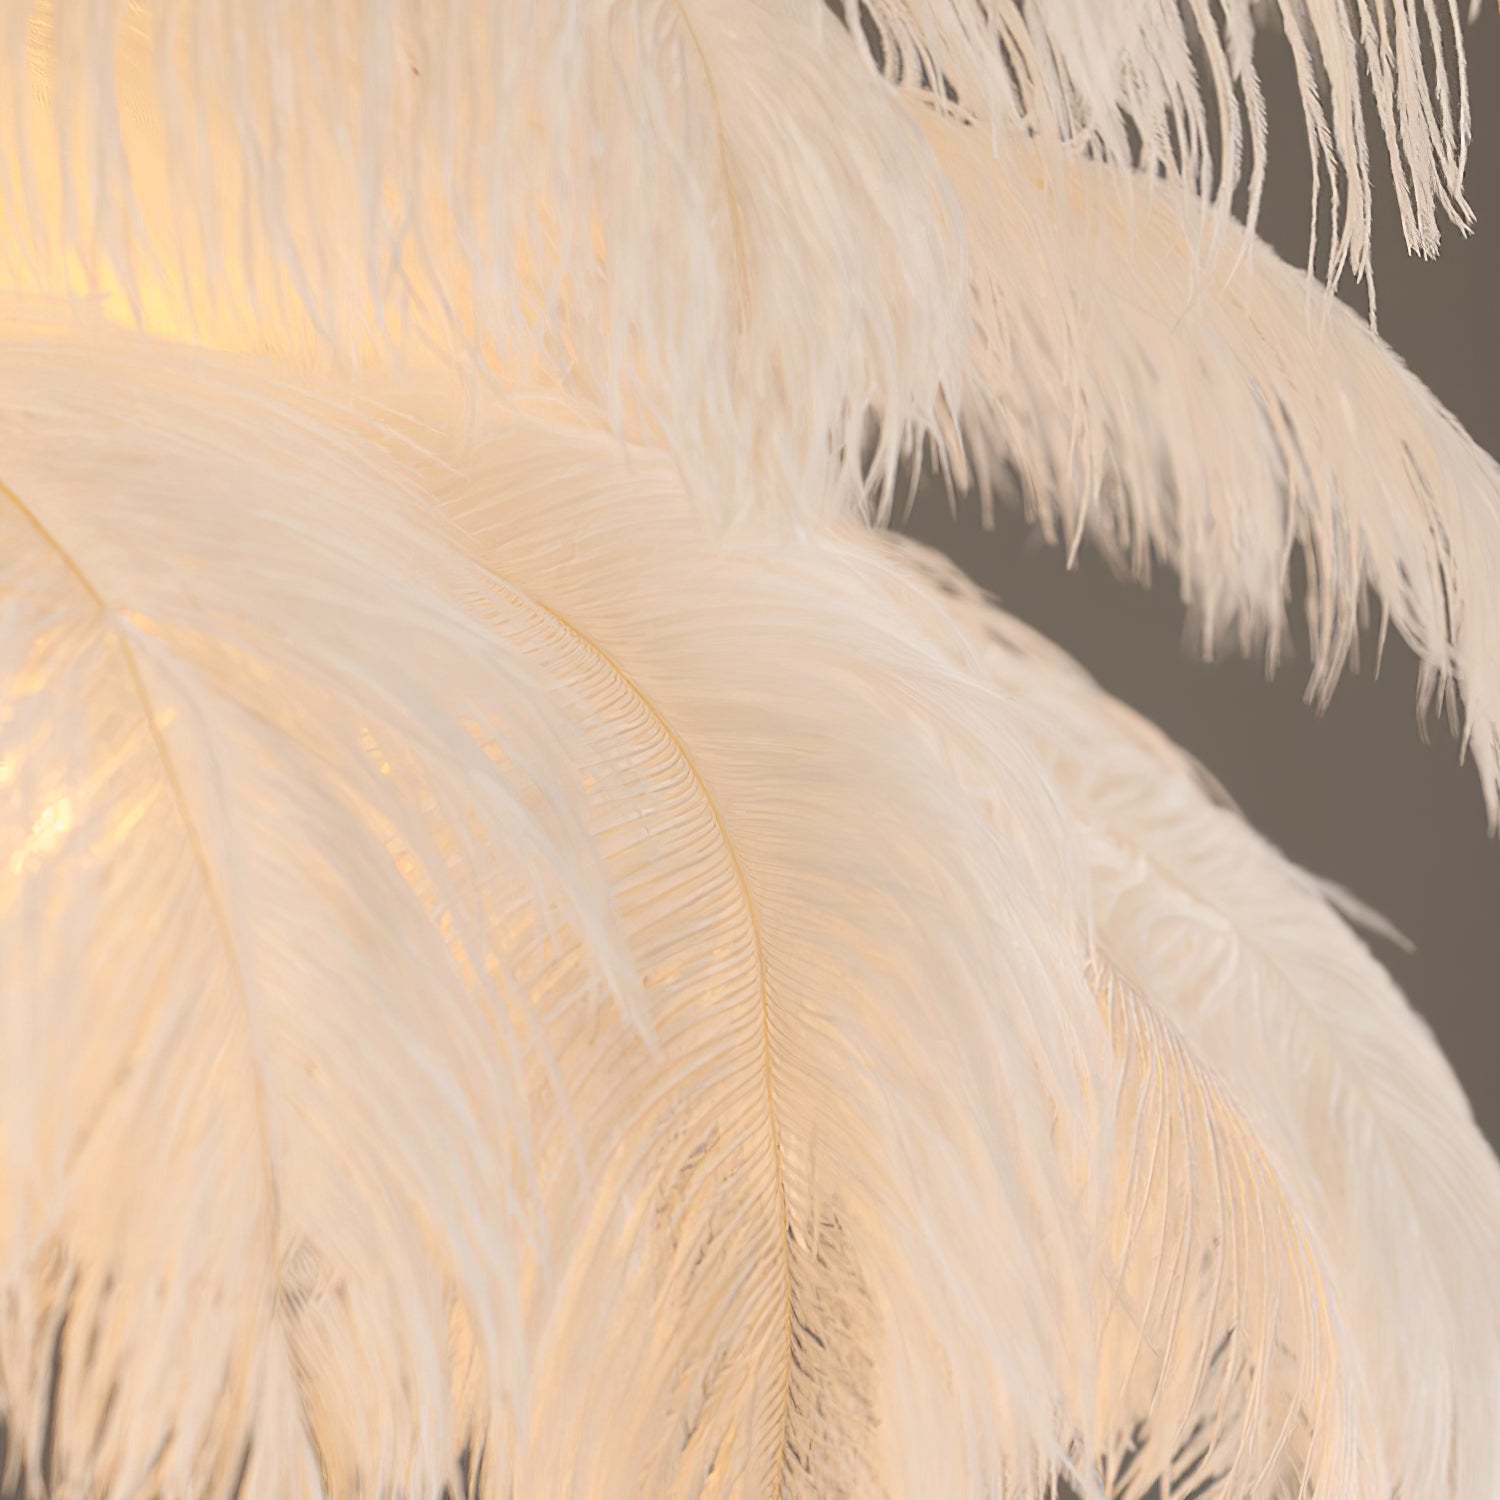 Ostrich Feather Chandelier